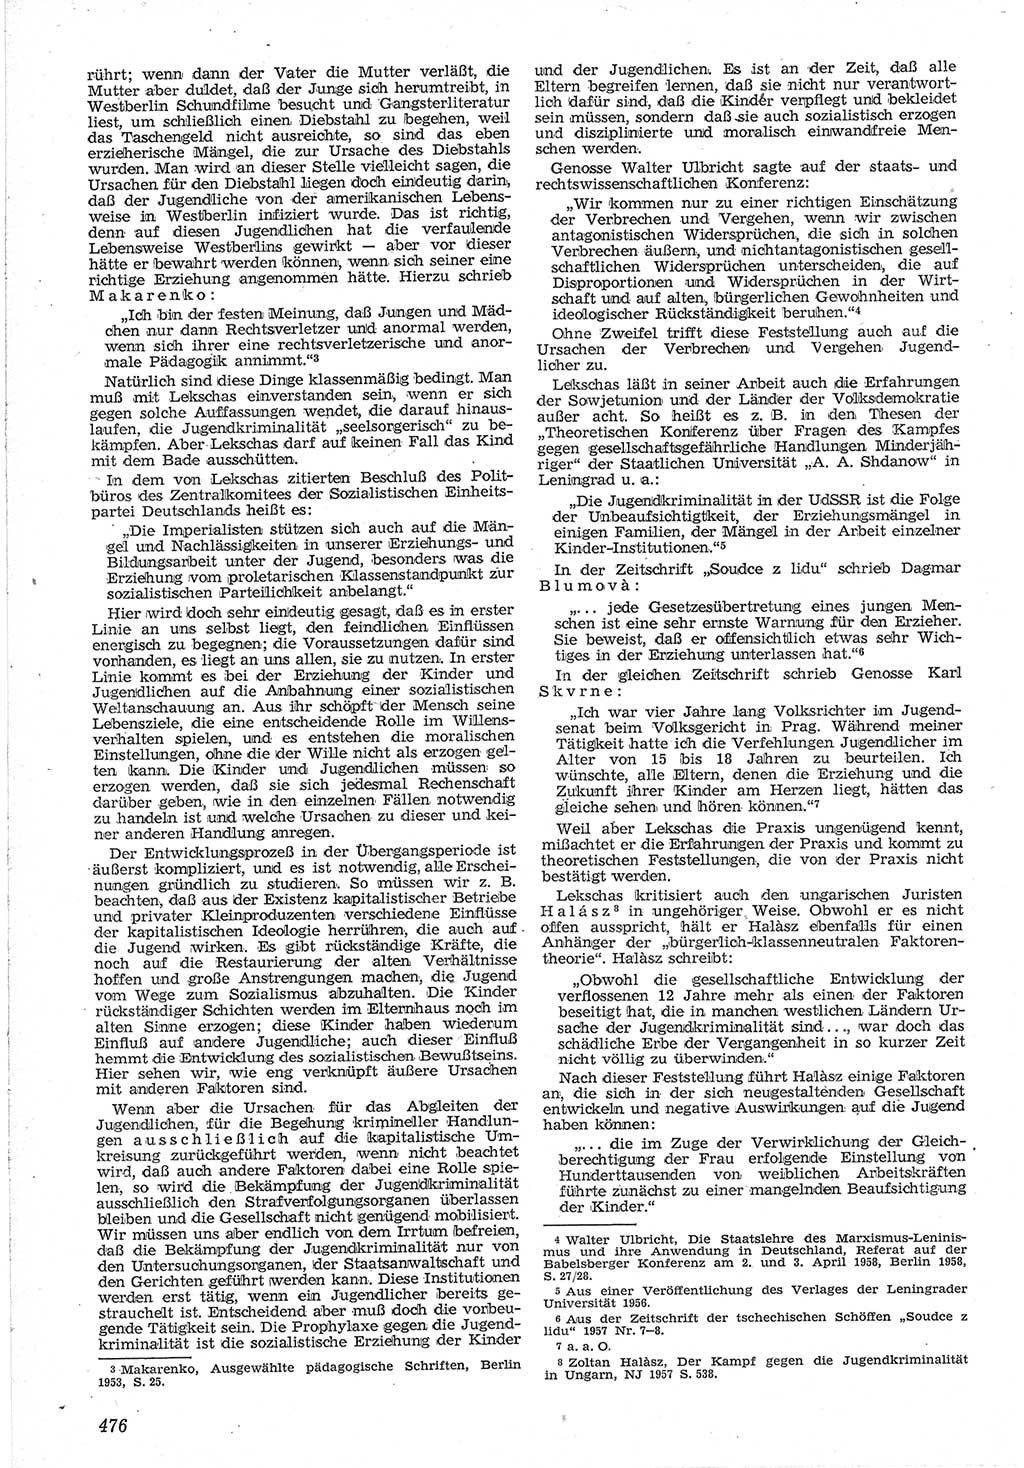 Neue Justiz (NJ), Zeitschrift für Recht und Rechtswissenschaft [Deutsche Demokratische Republik (DDR)], 12. Jahrgang 1958, Seite 476 (NJ DDR 1958, S. 476)